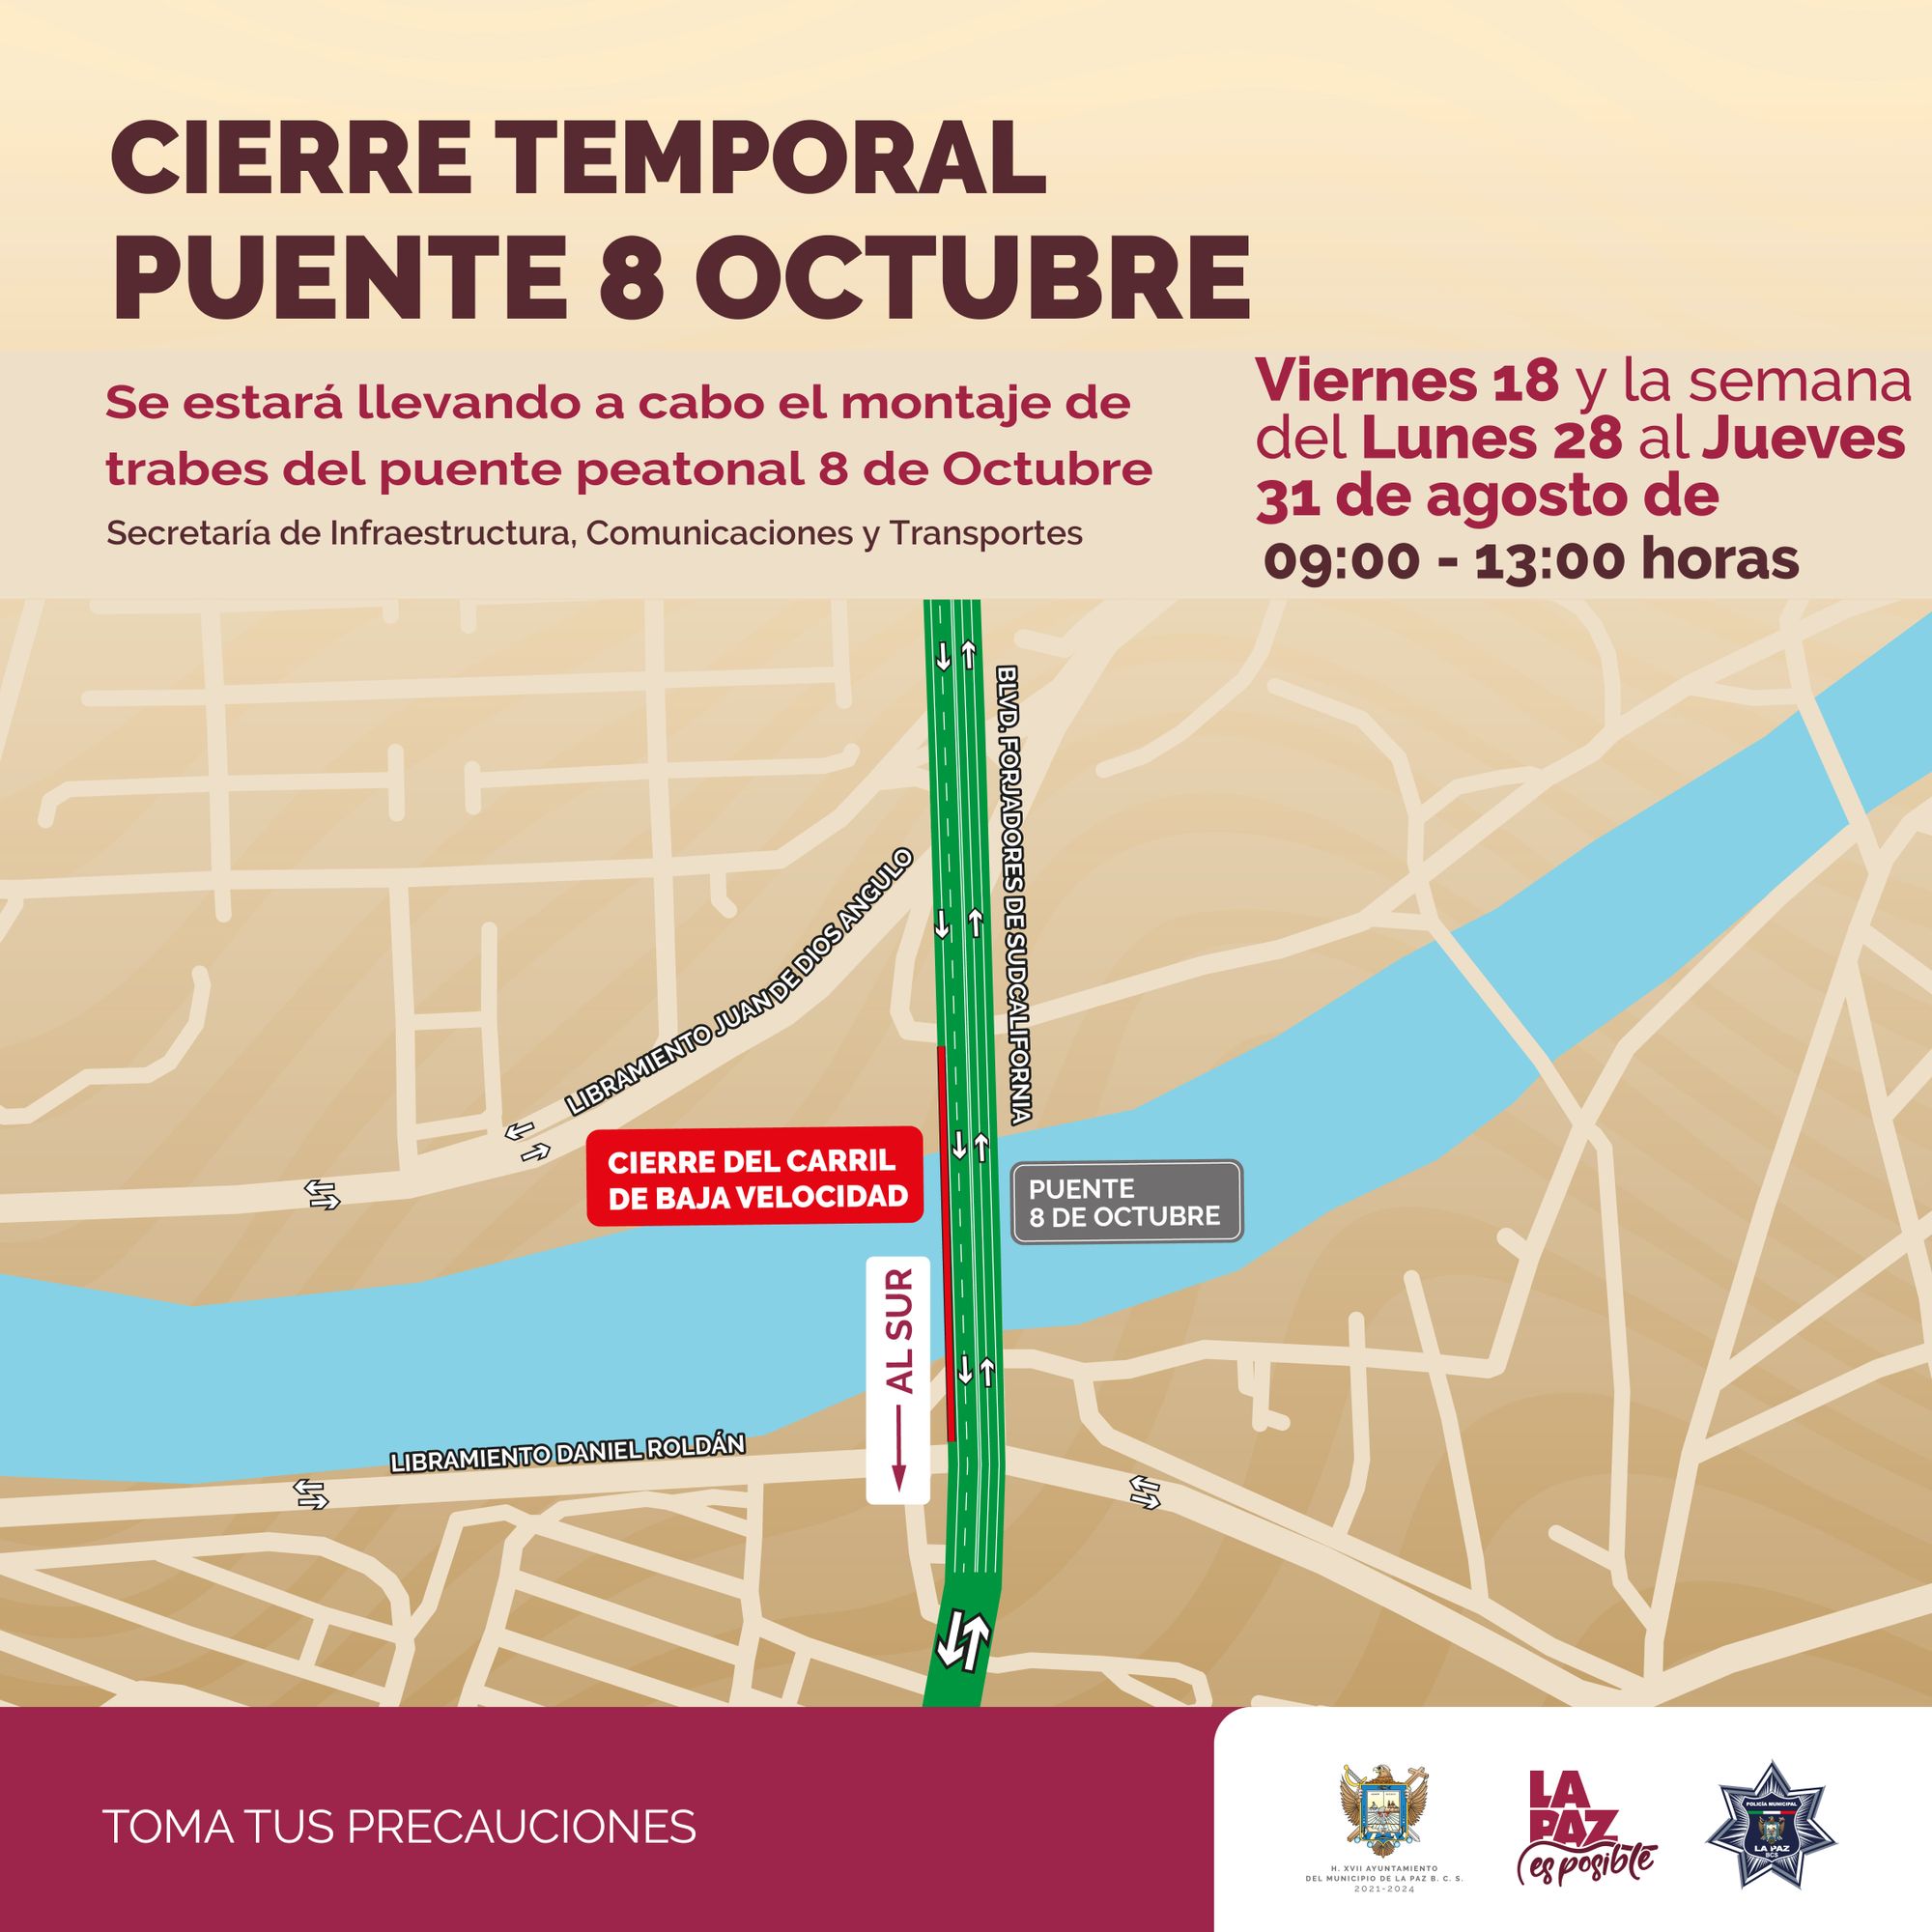 Cierre parcial de circulación en el puente 8 de Octubre; se mantendrá el tránsito vehicular en dos carriles.